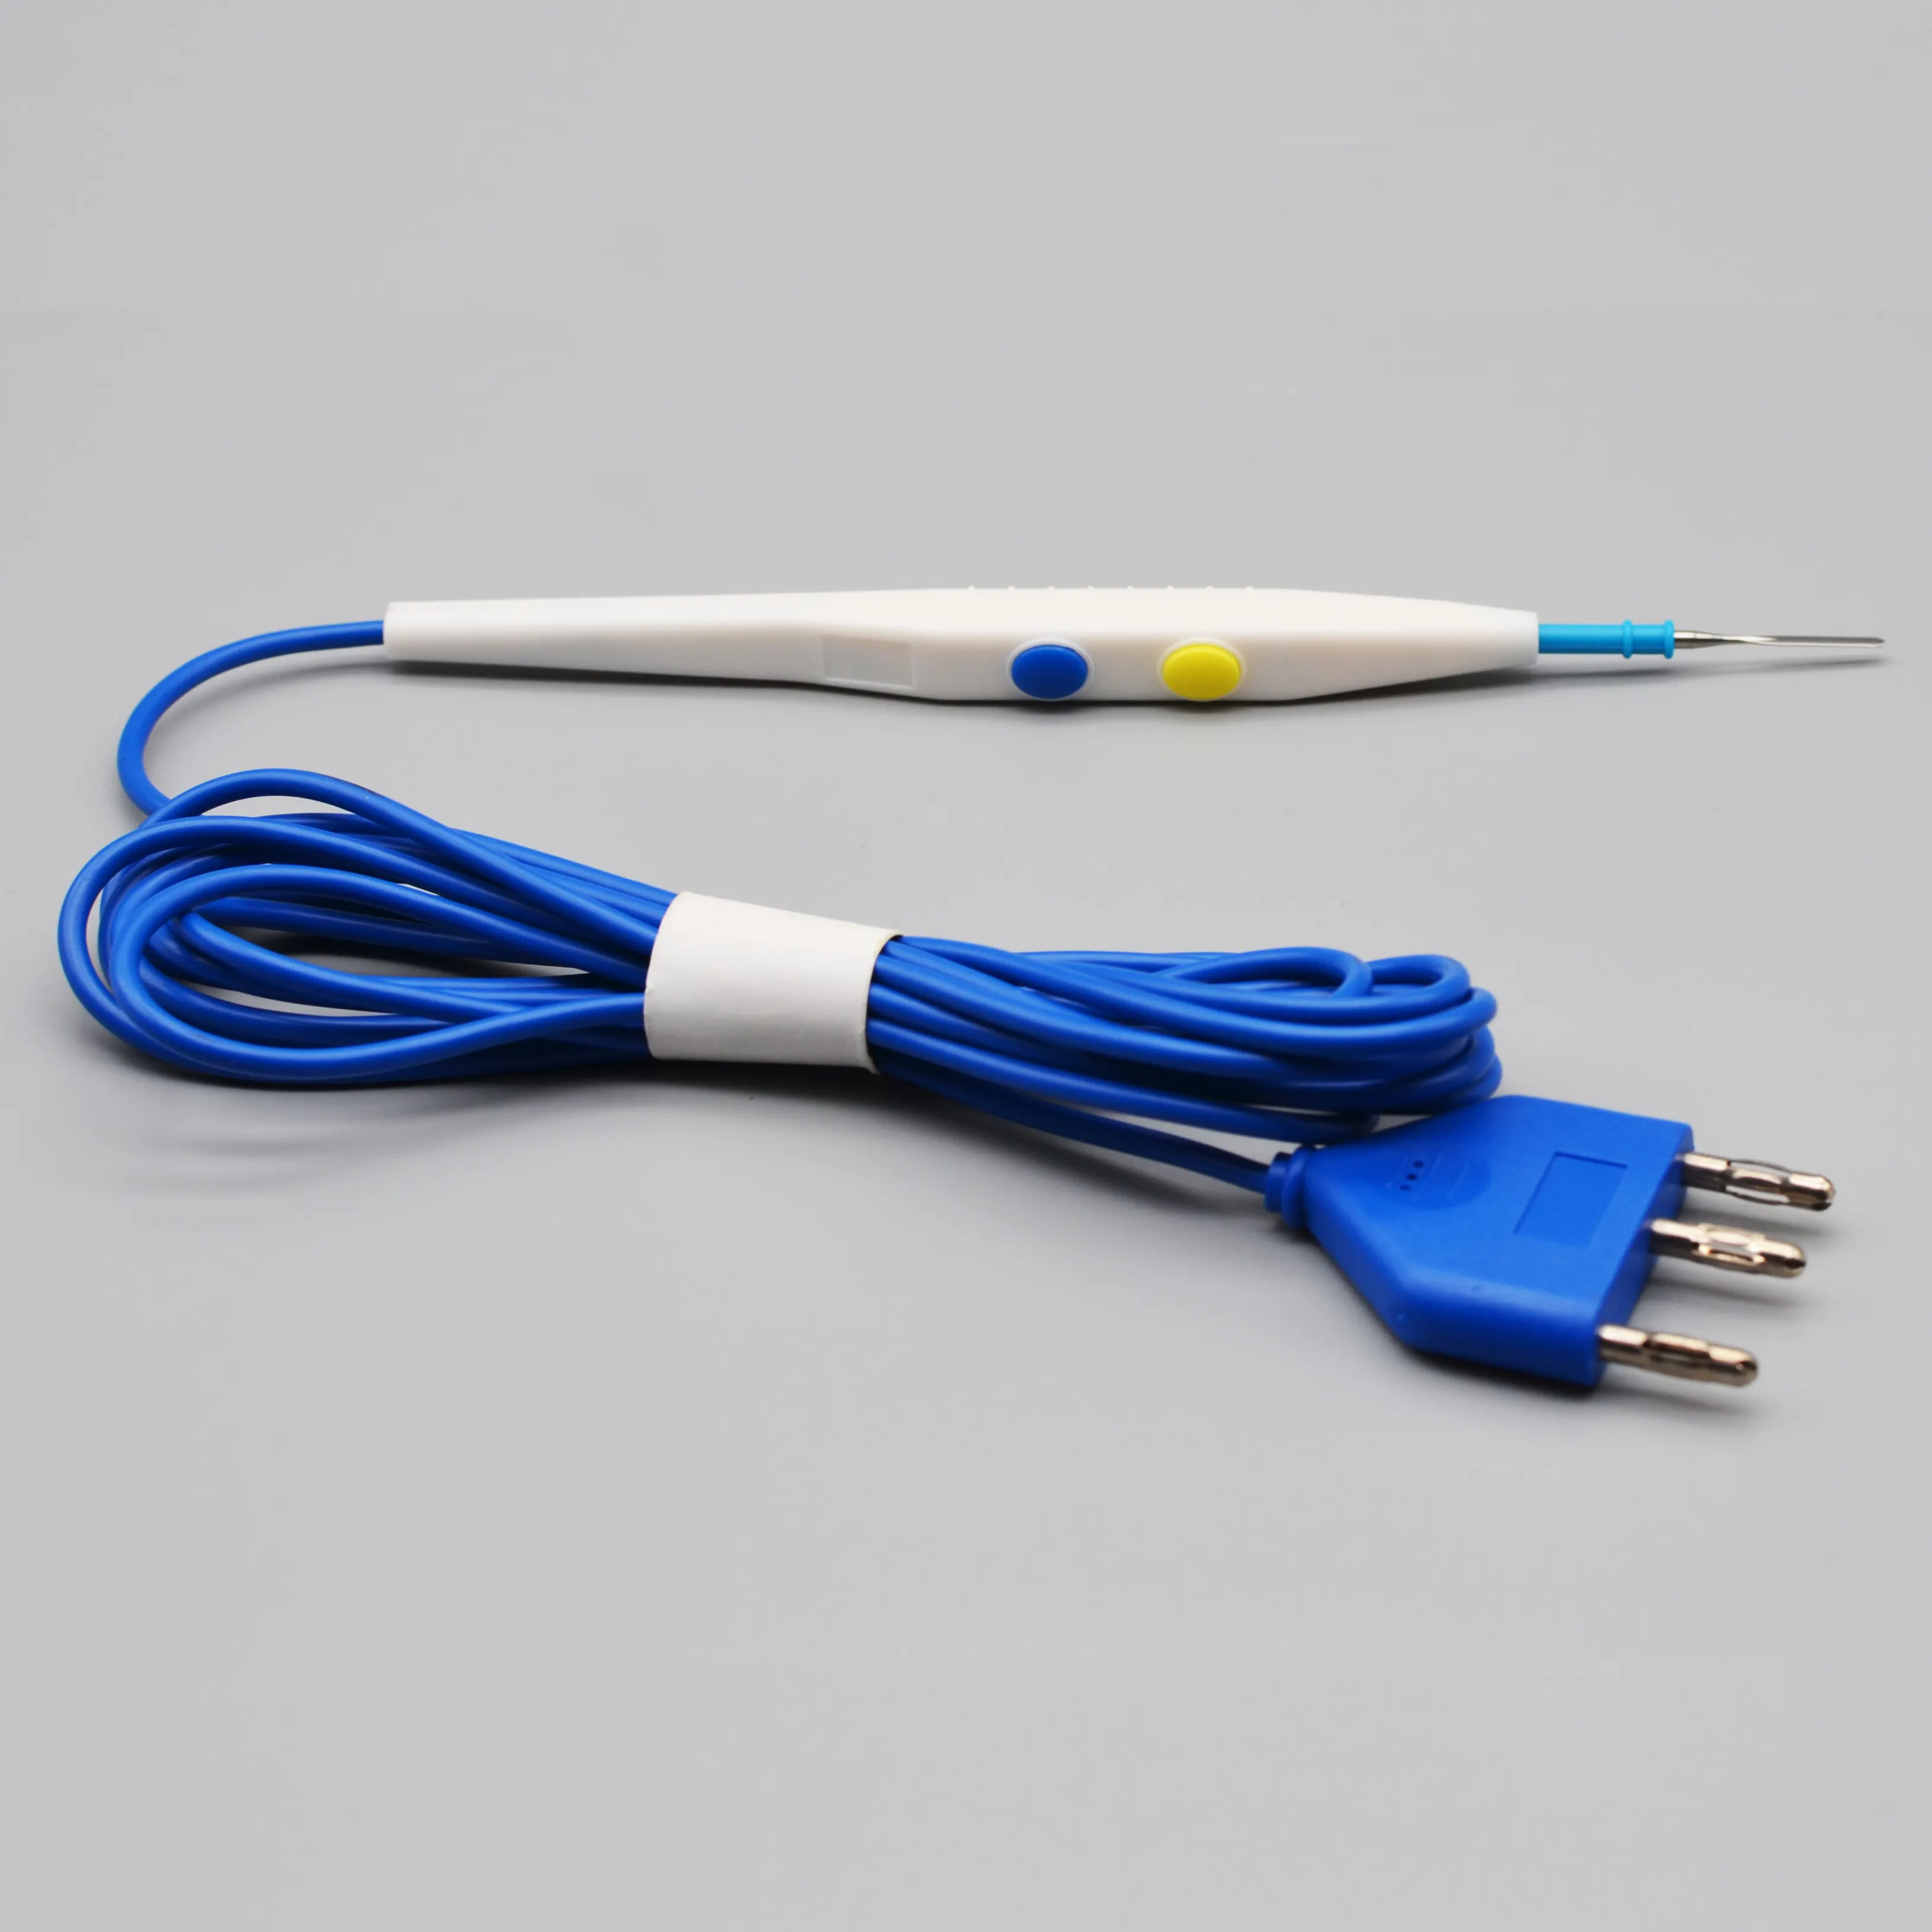 ดินสอผ่าตัดไฟฟ้าแบบใช้แล้วทิ้งสีฟ้า,ดินสอควบคุมด้วยไฟฟ้าสำหรับเครื่องกำเนิดกระแสไฟฟ้าไดเอเธอร์มีหูจับ